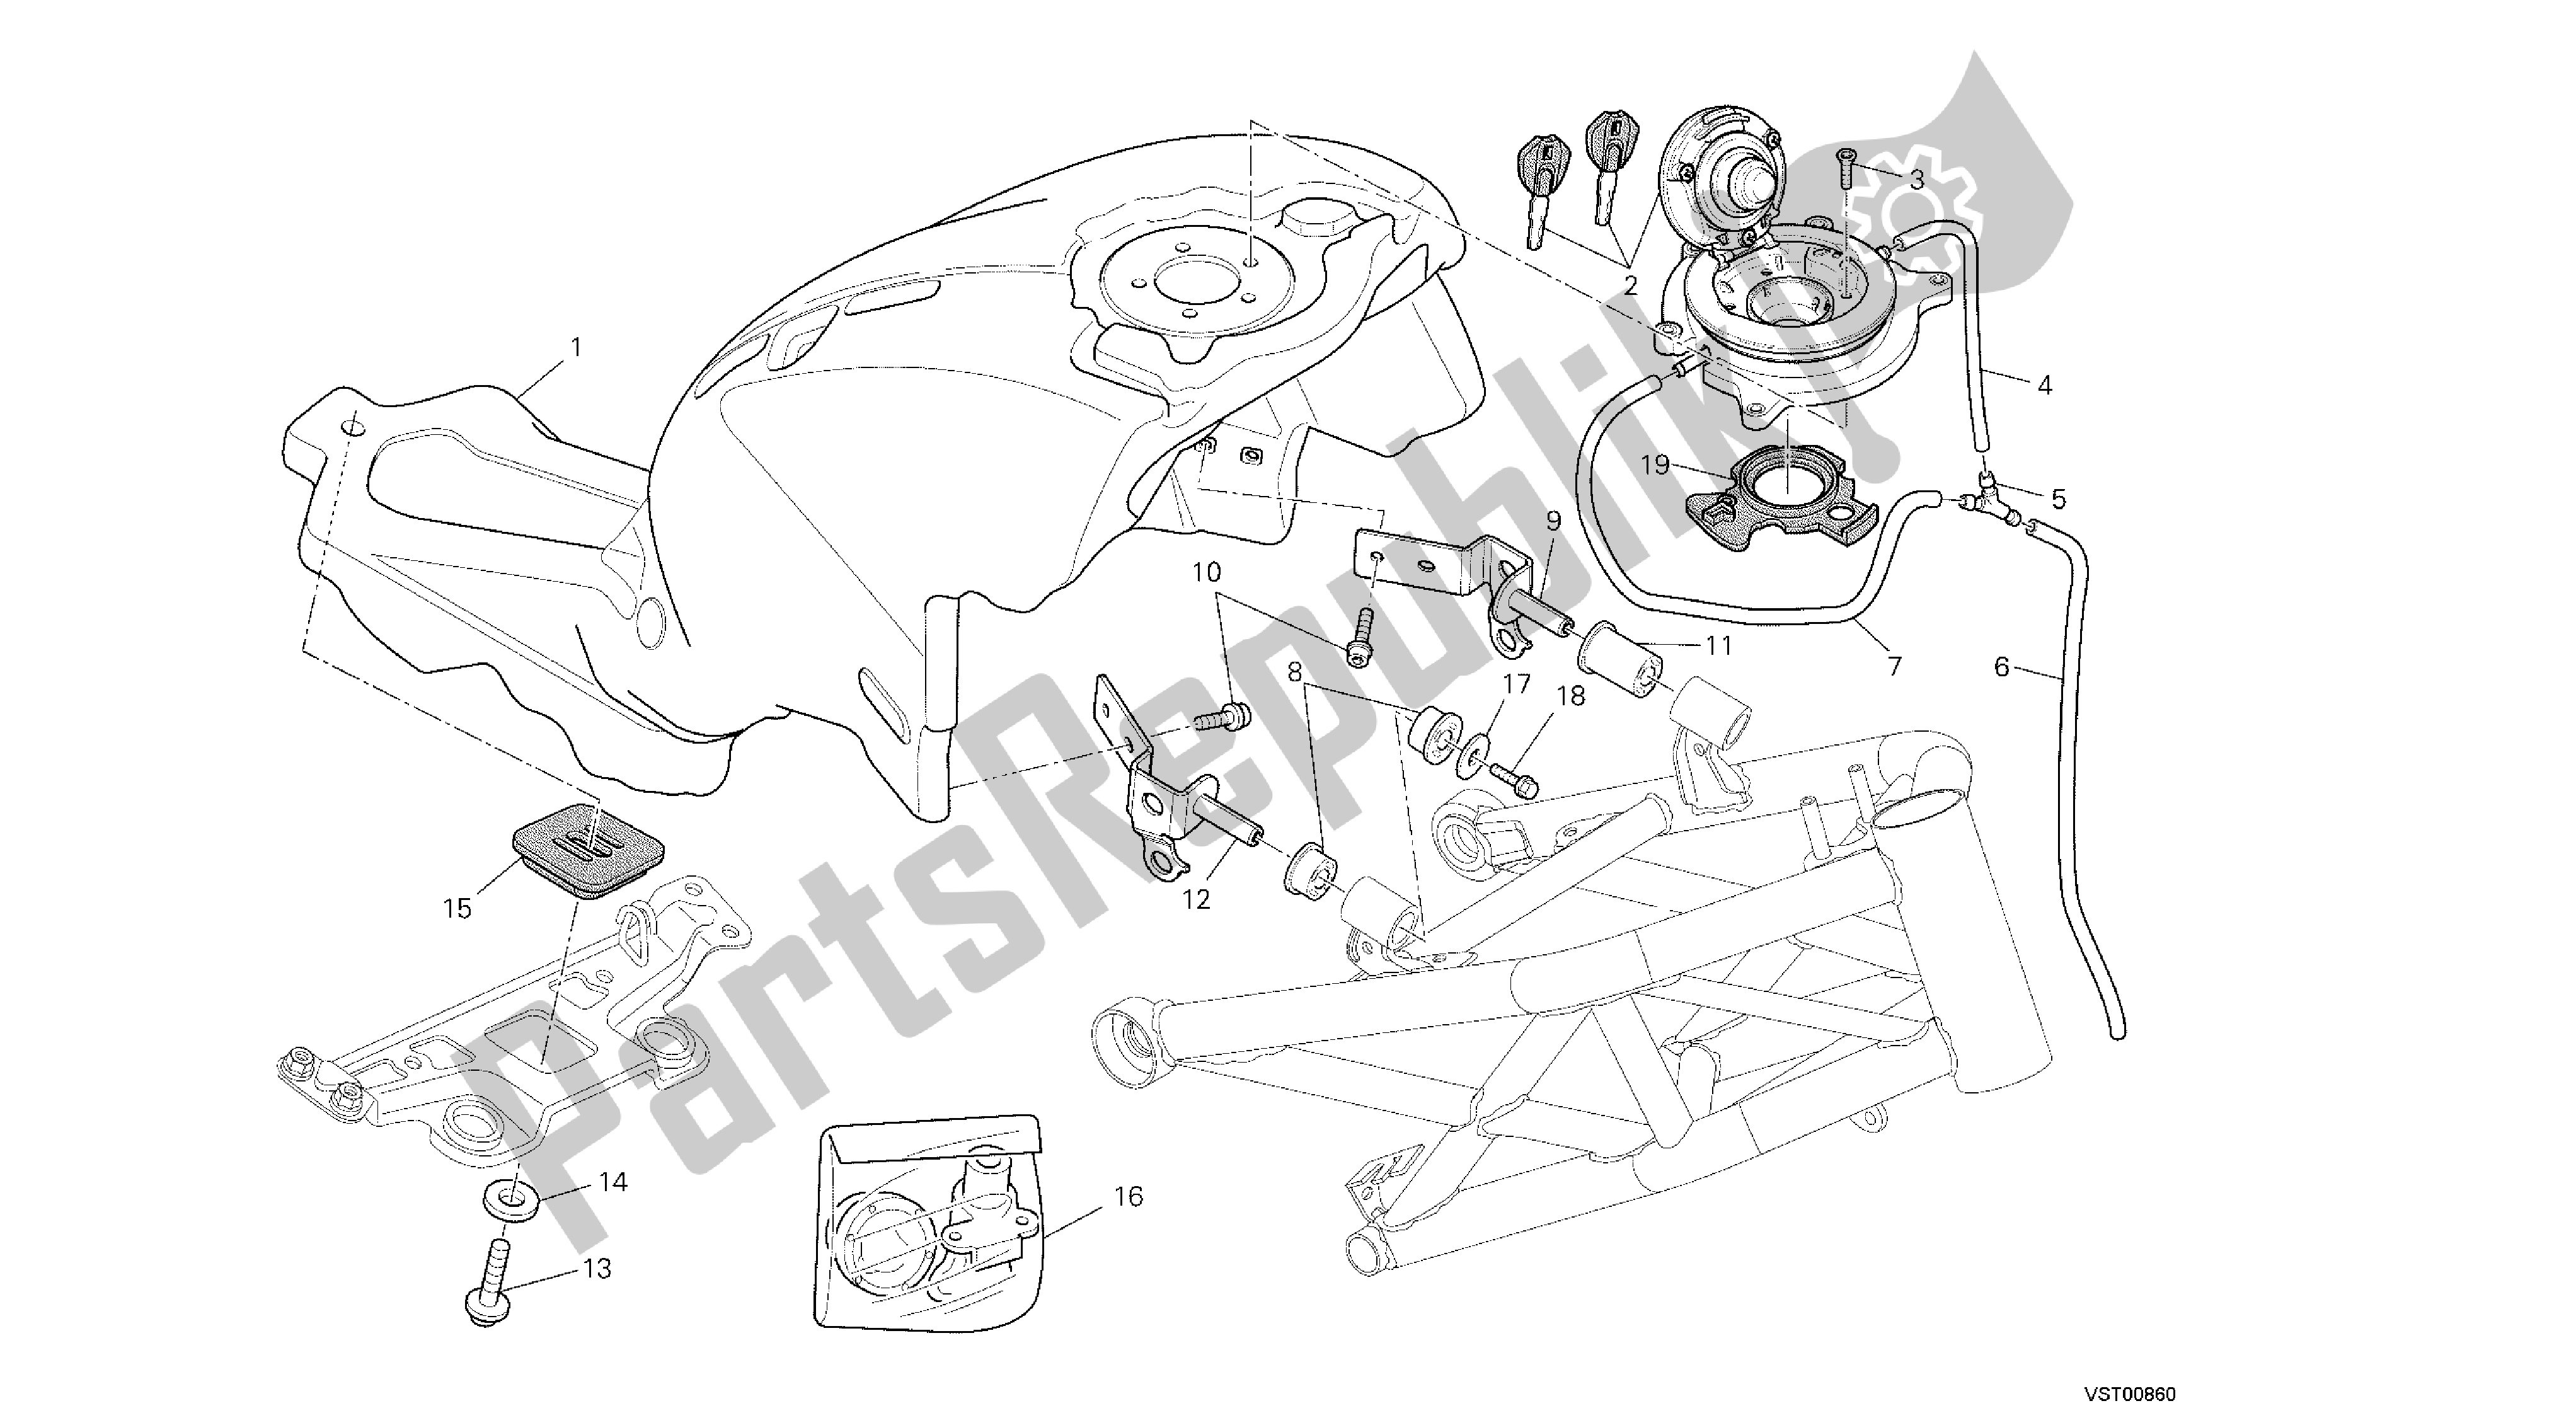 Toutes les pièces pour le Dessin 035 - Réservoir De Carburant [mod: M796 Abs; Xst: Aus, Bra, Eur, Jap] Group Frame du Ducati Monster ABS 796 2014